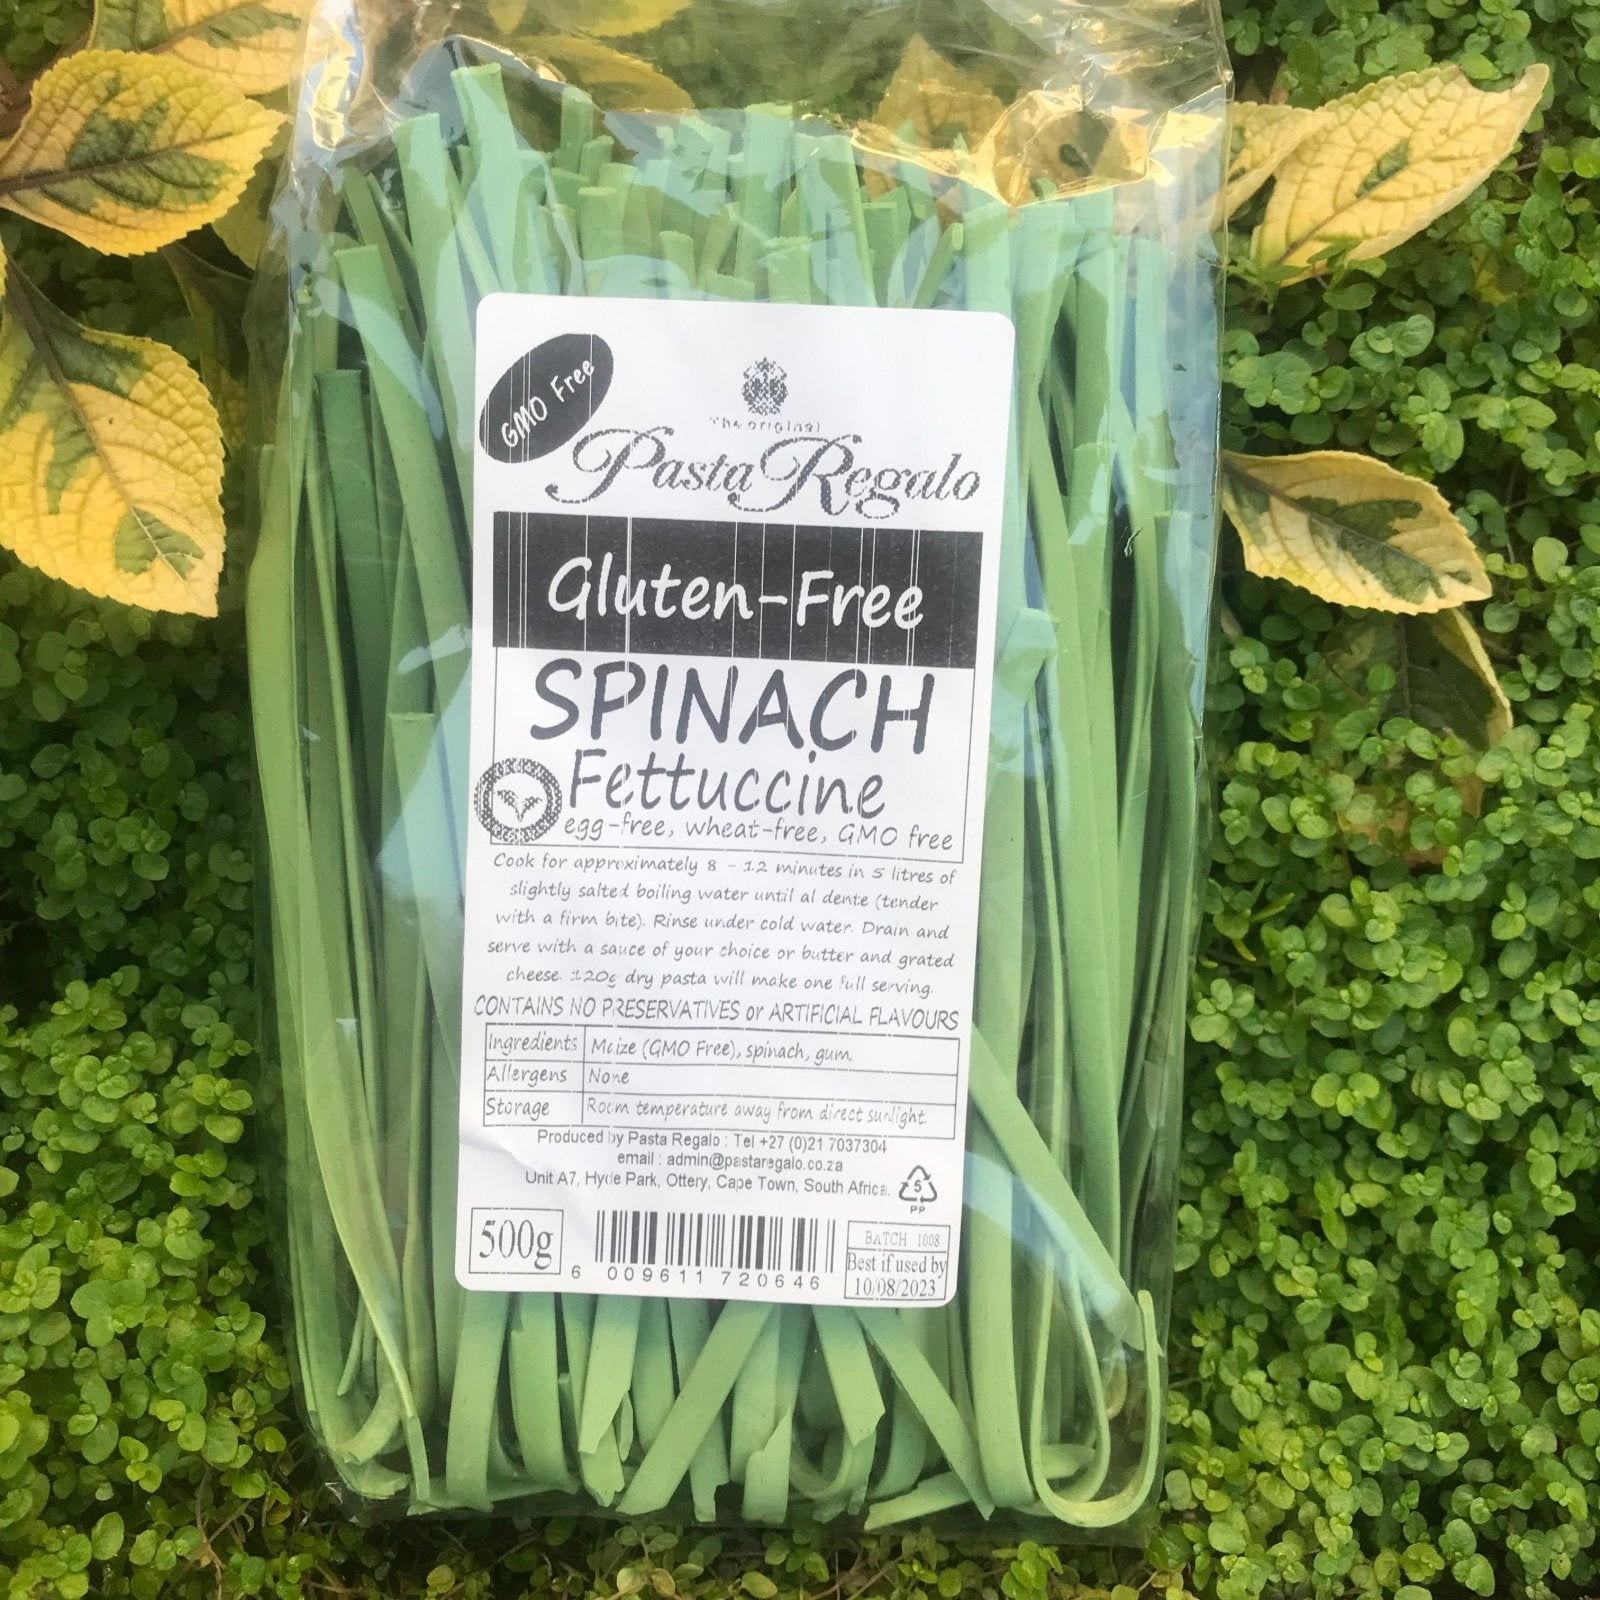 Gluten Free Spinach Fettuccine (500g) - The Deli